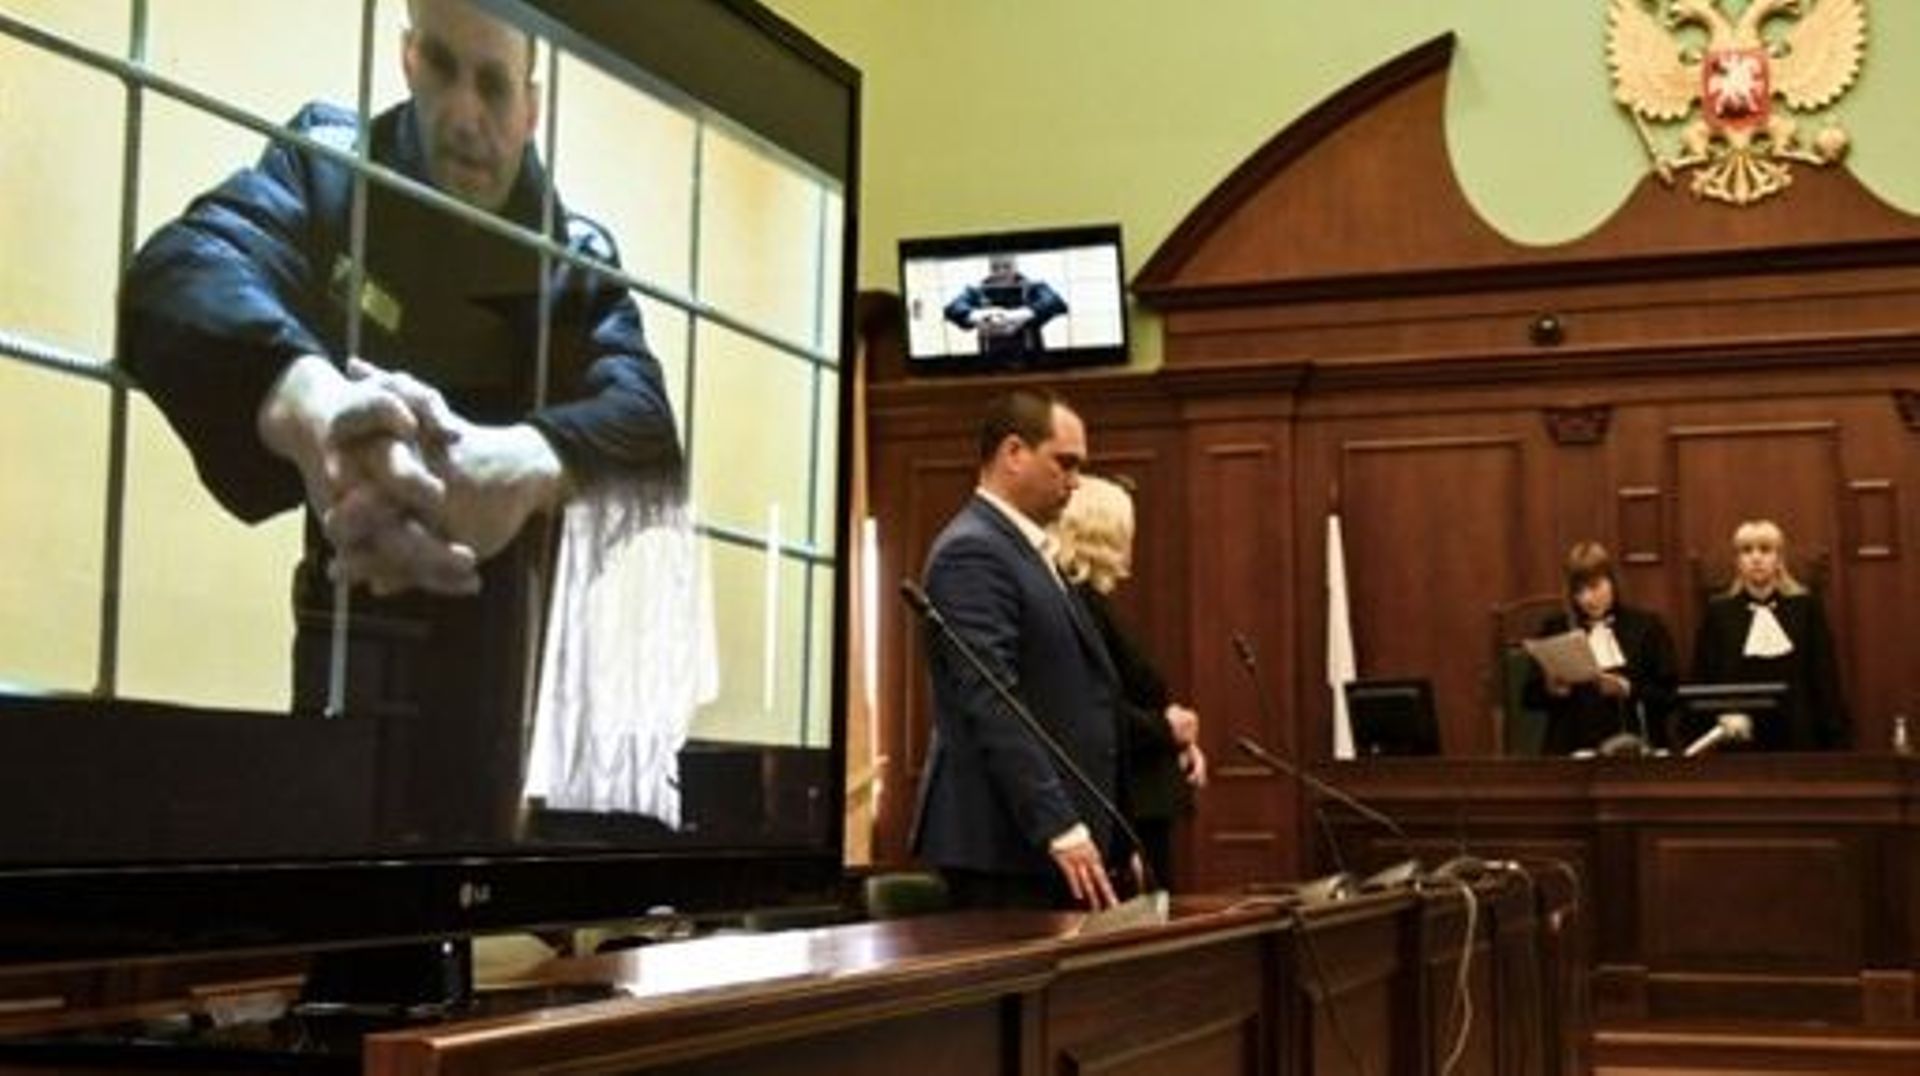 L’opposant russe Alexeï Navalny, malade, laissé "sans soins" en cellule, selon son avocat